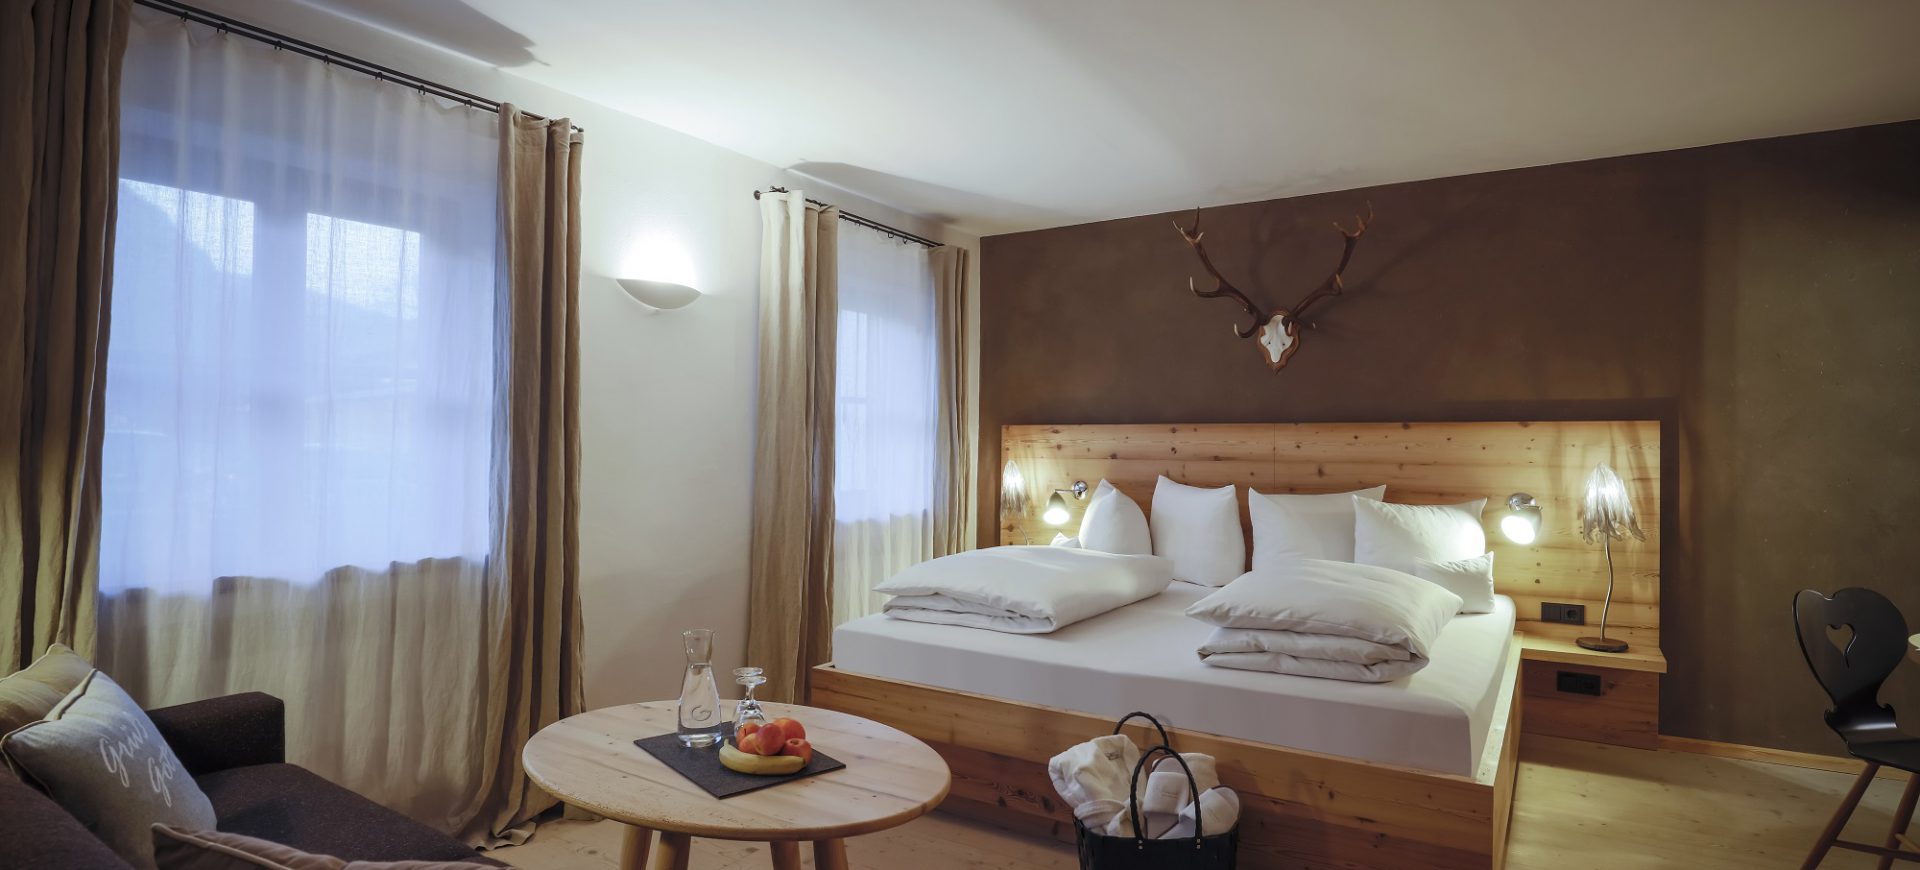 Doppelzimmer Bauernhaus Hotel Garmisch-Partenkirchen Staudacherhof